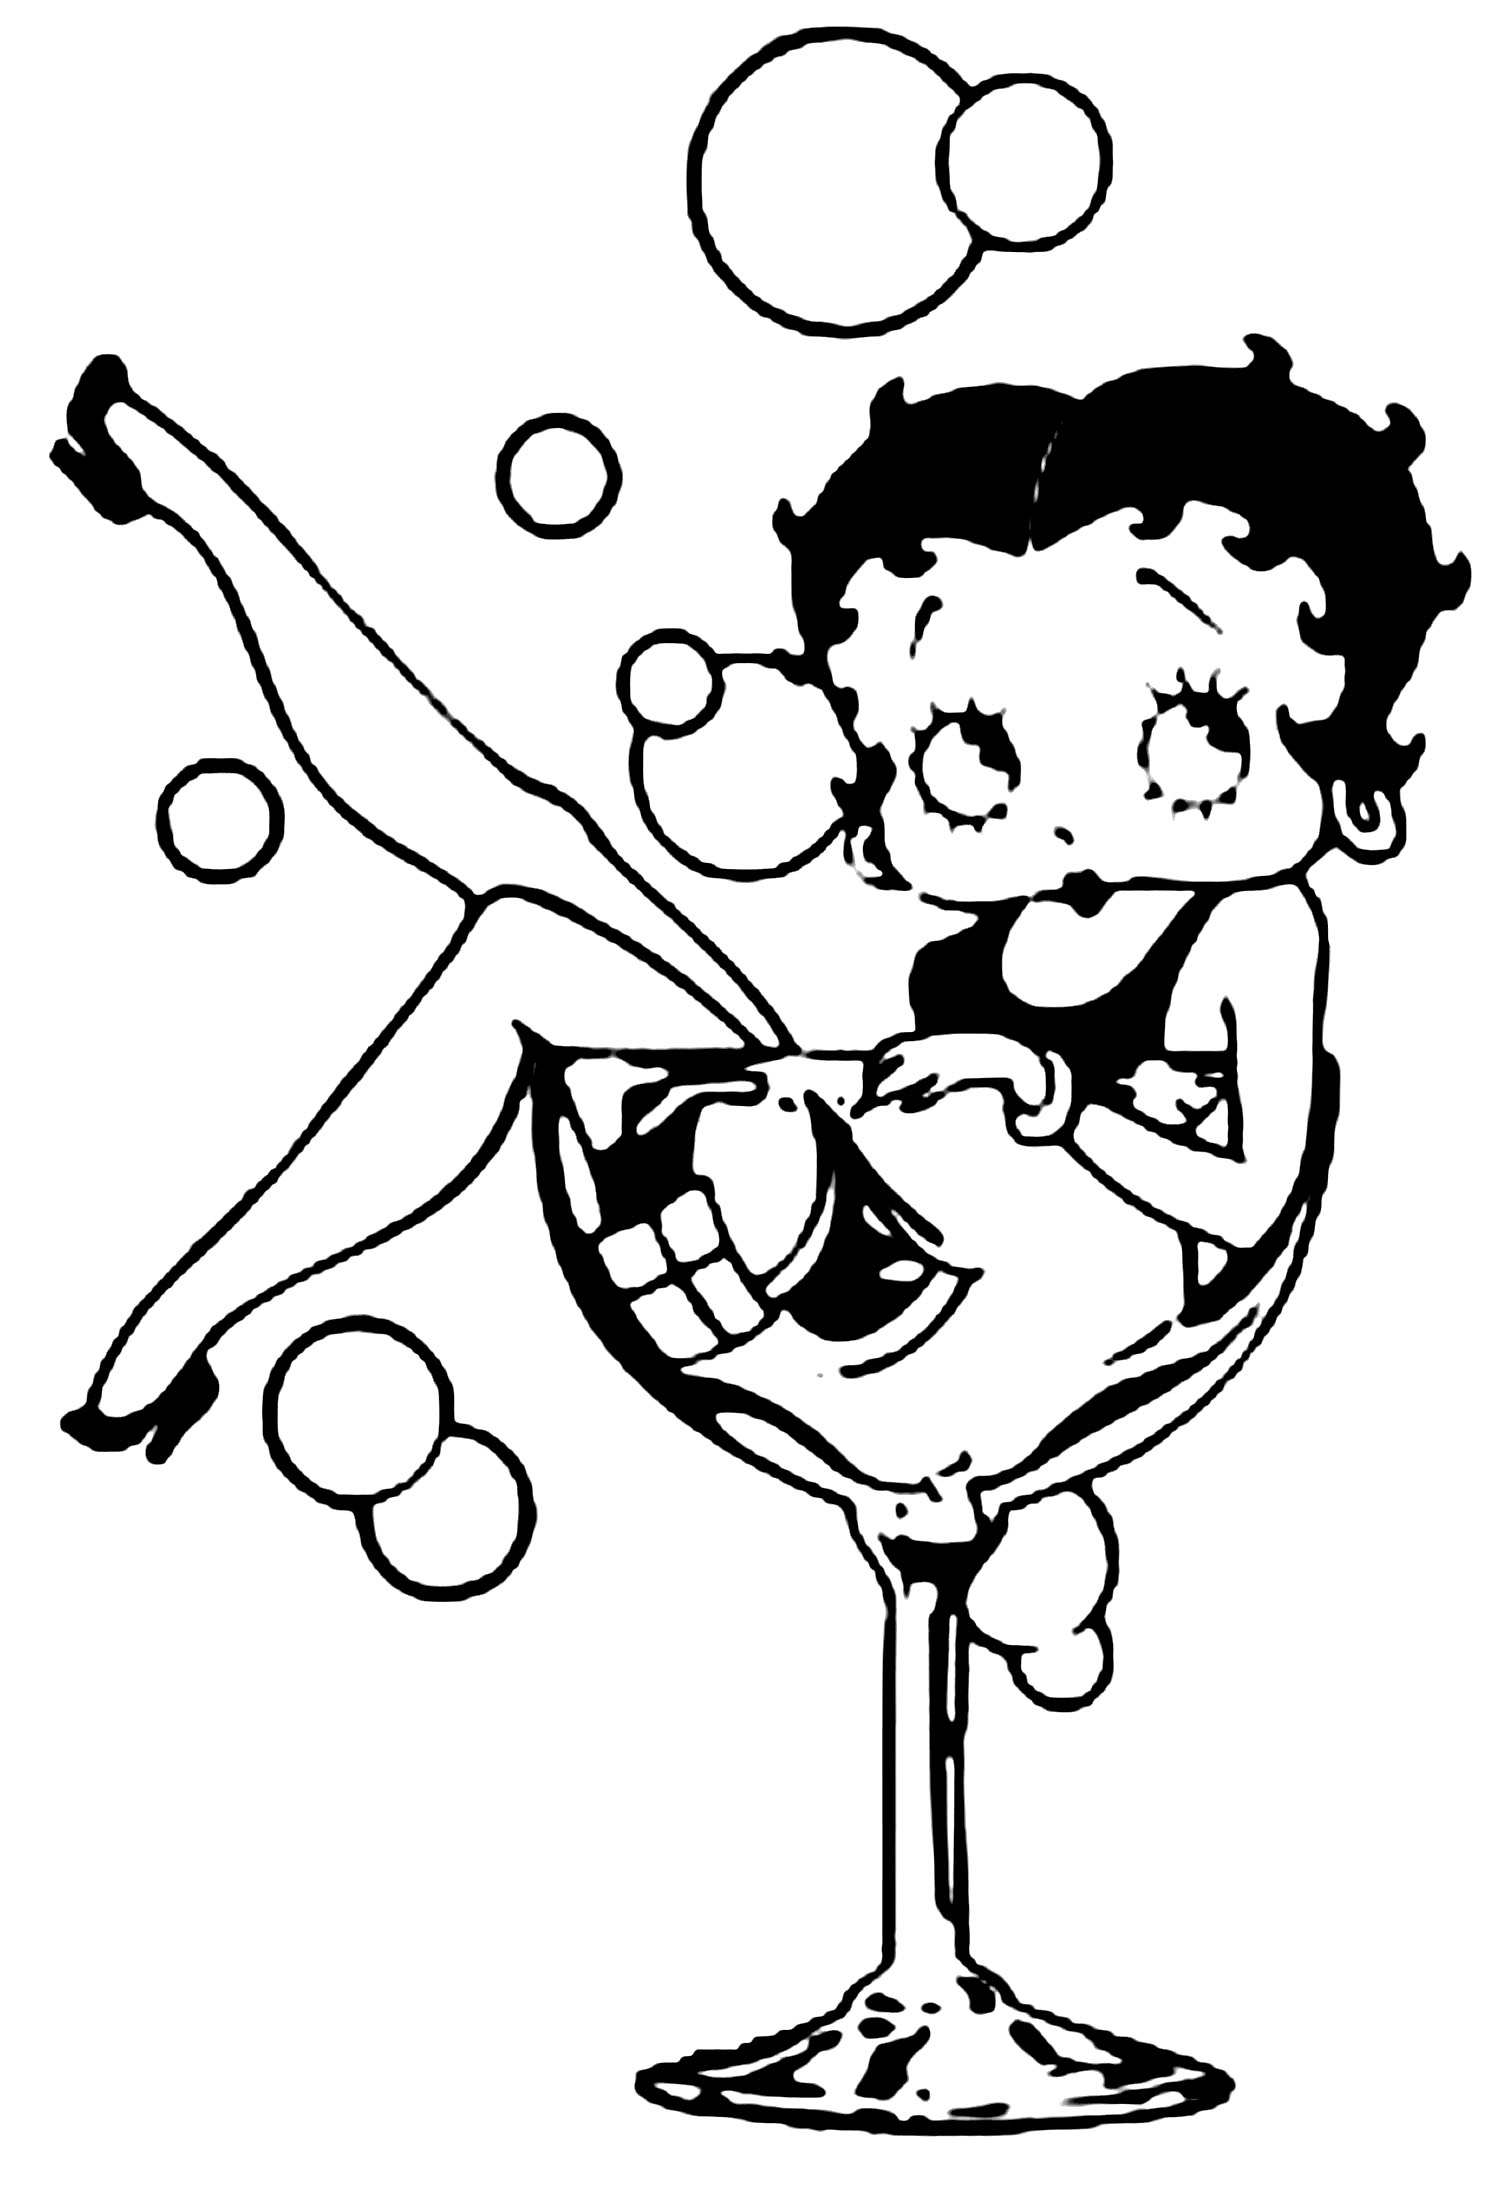 Image de Betty Boop à imprimer et à colorier